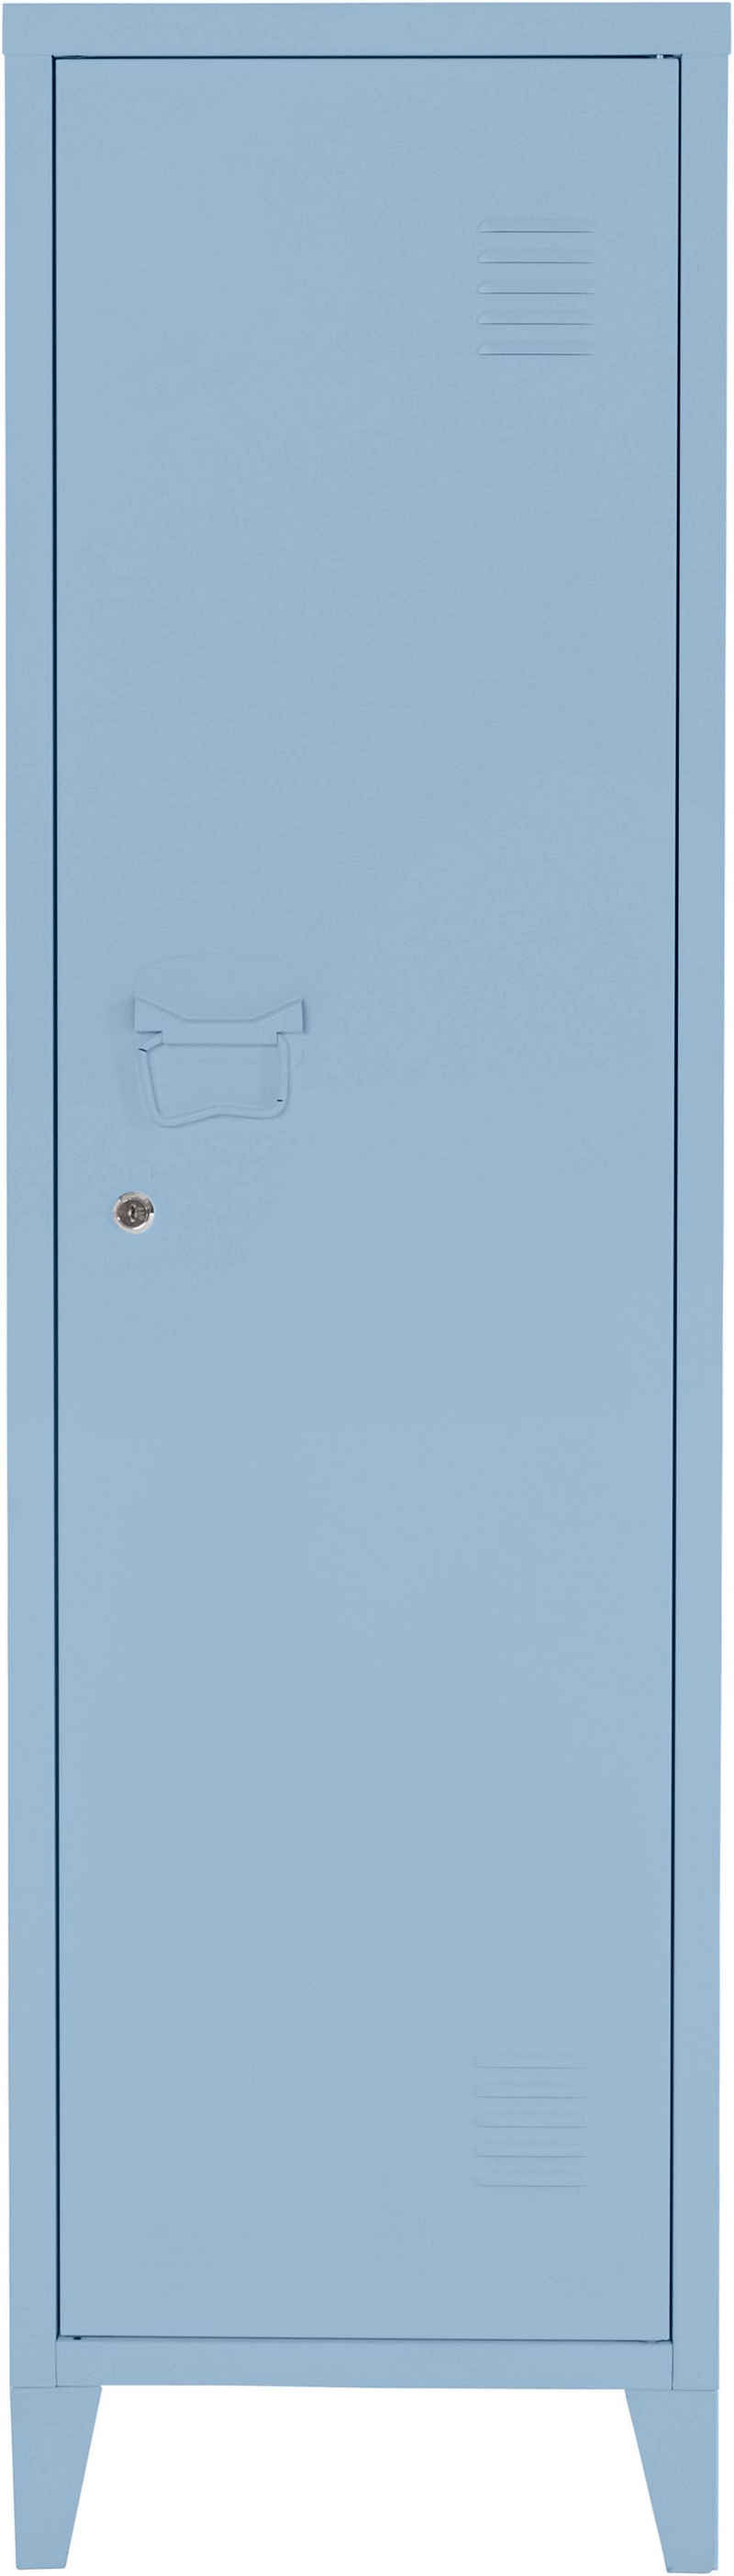 andas Midischrank »Jensjorg« Midischrank aus pflegeleitem Metall in minimalistishes Design, mit 2 x Einlegeböden hinter der Tür, mit Schlüssel in verschiedenen Farbvarianten erhältlich, Höhe 137 cm